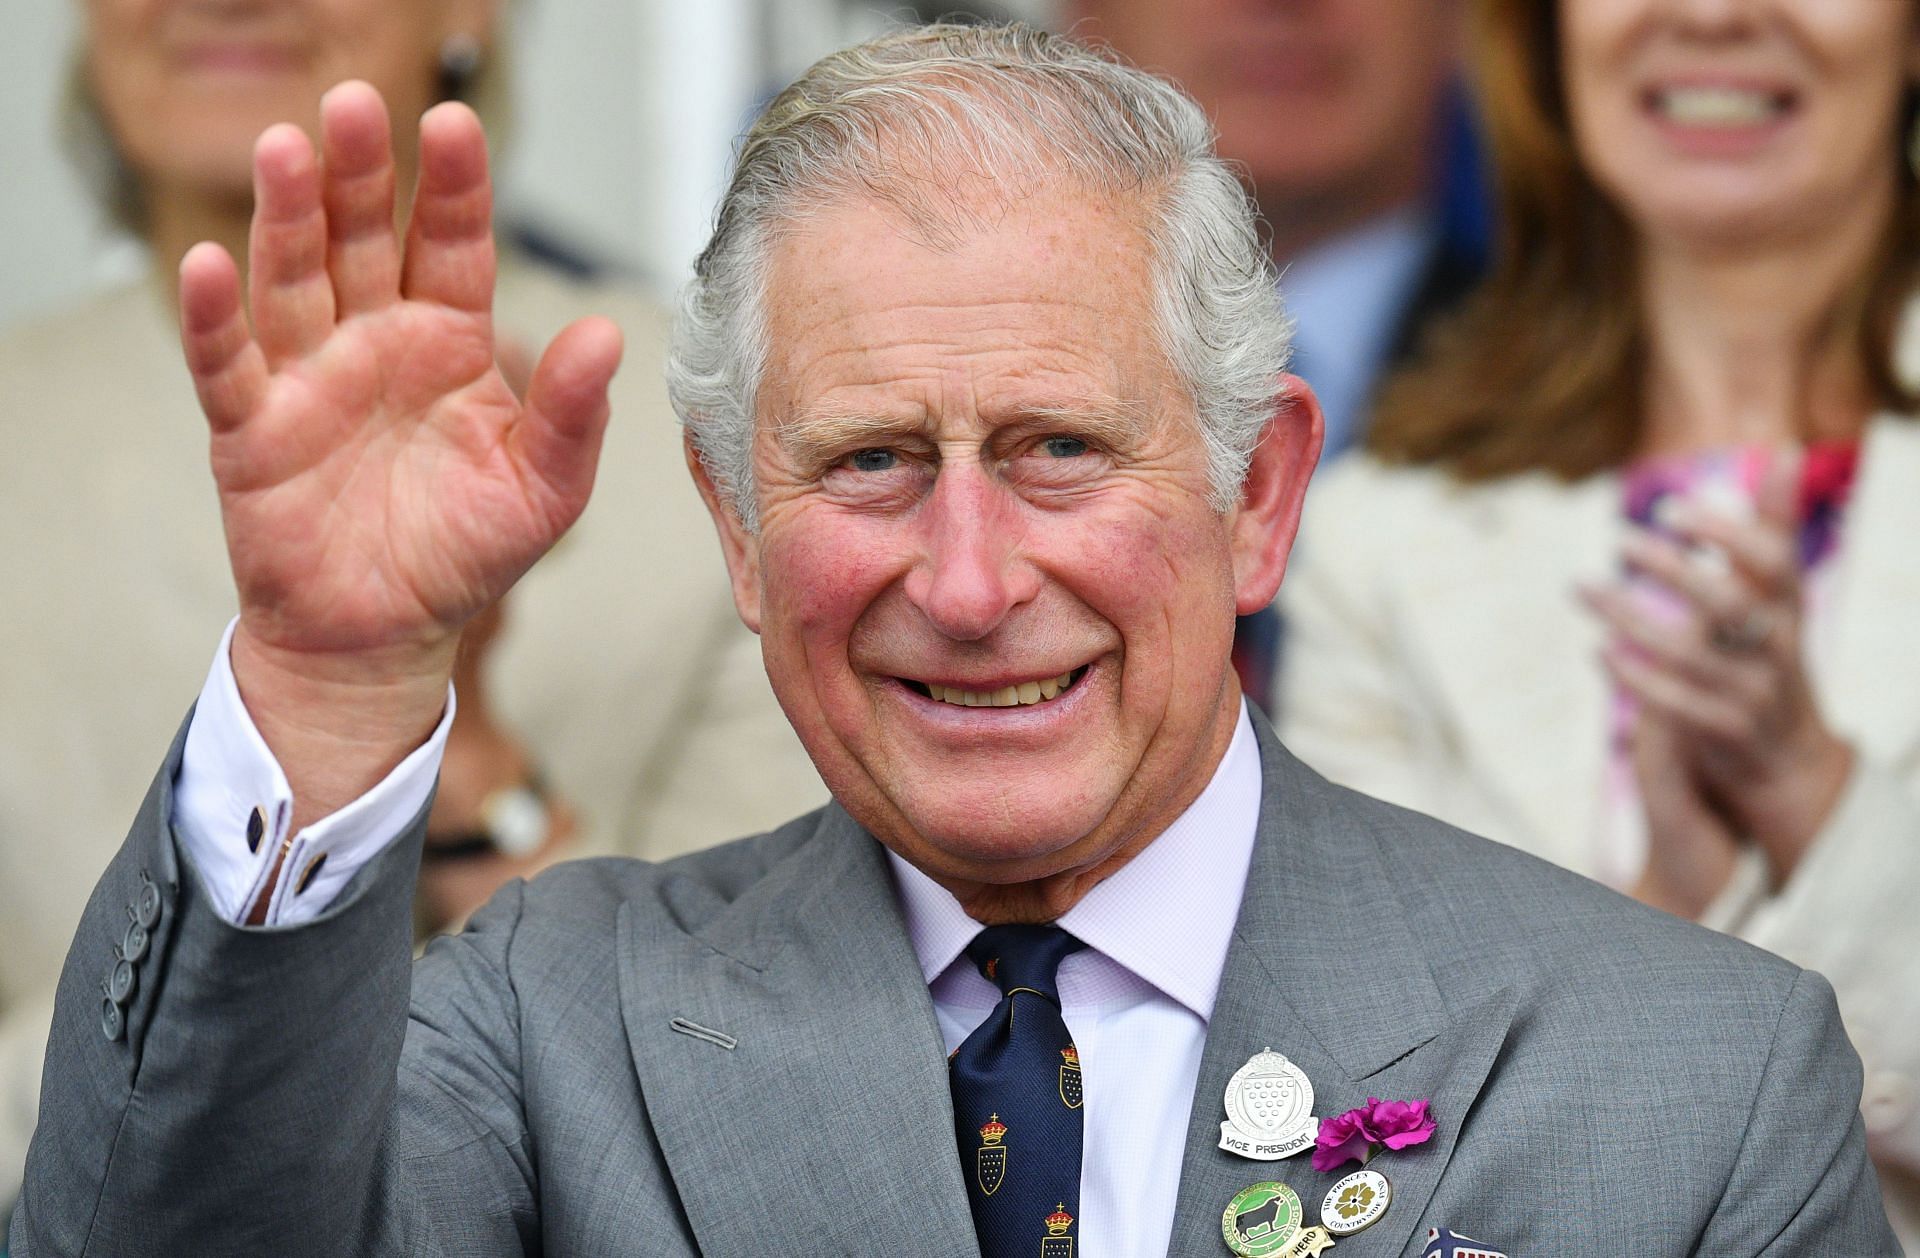 King Charles at the Royal Cornwall Show (Image via Getty)